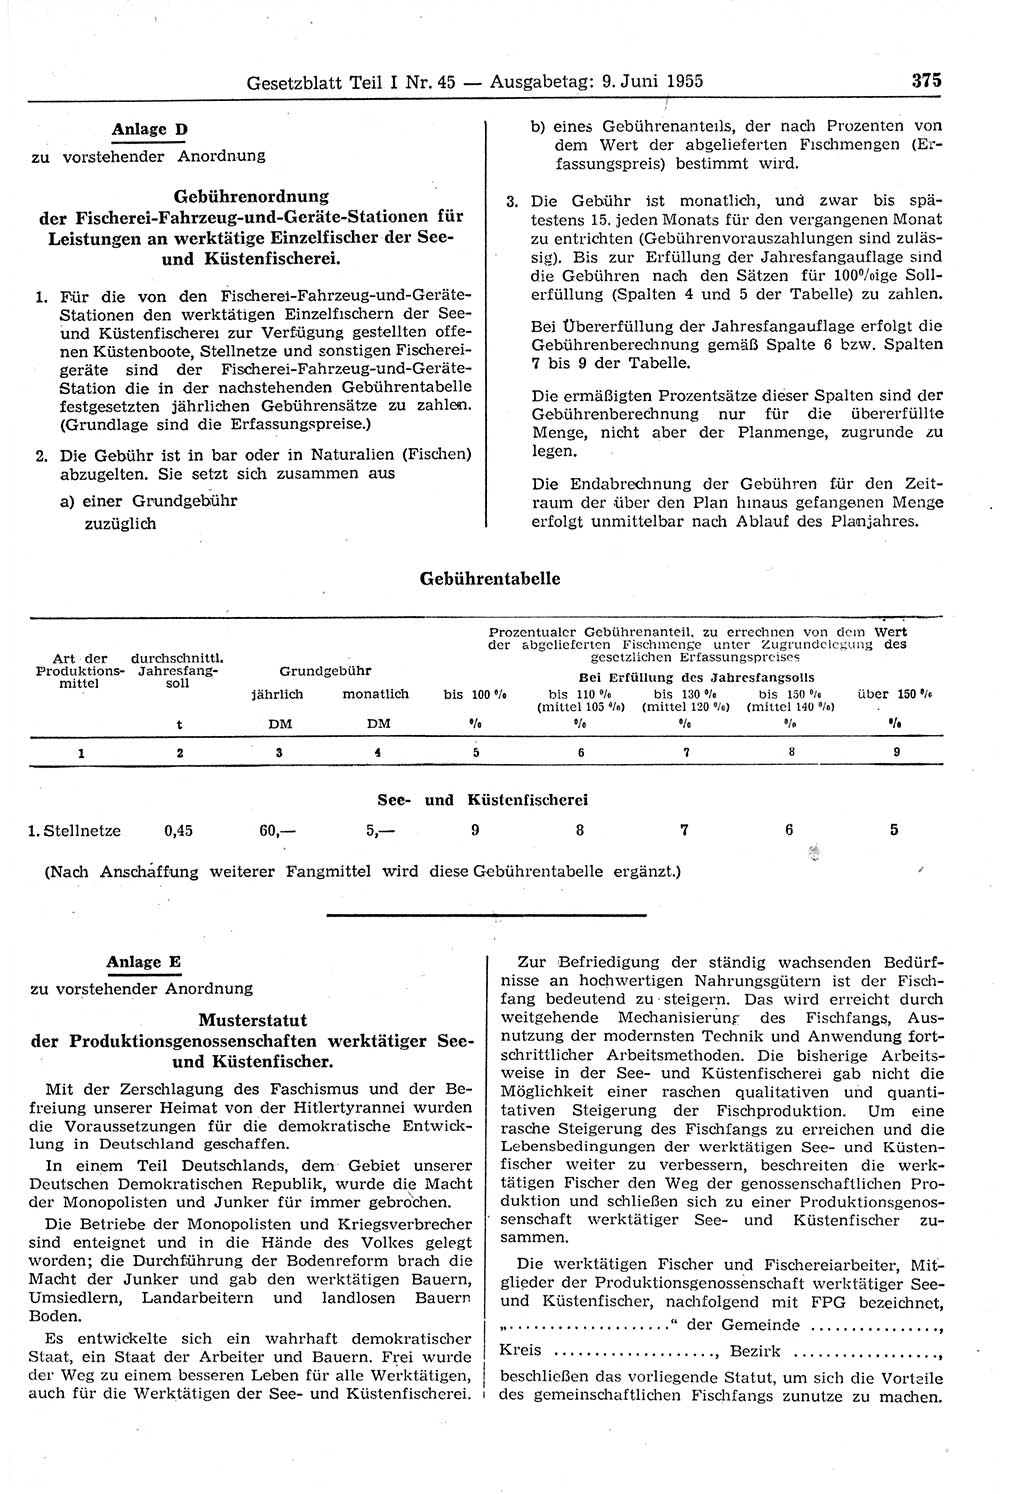 Gesetzblatt (GBl.) der Deutschen Demokratischen Republik (DDR) Teil Ⅰ 1955, Seite 375 (GBl. DDR Ⅰ 1955, S. 375)